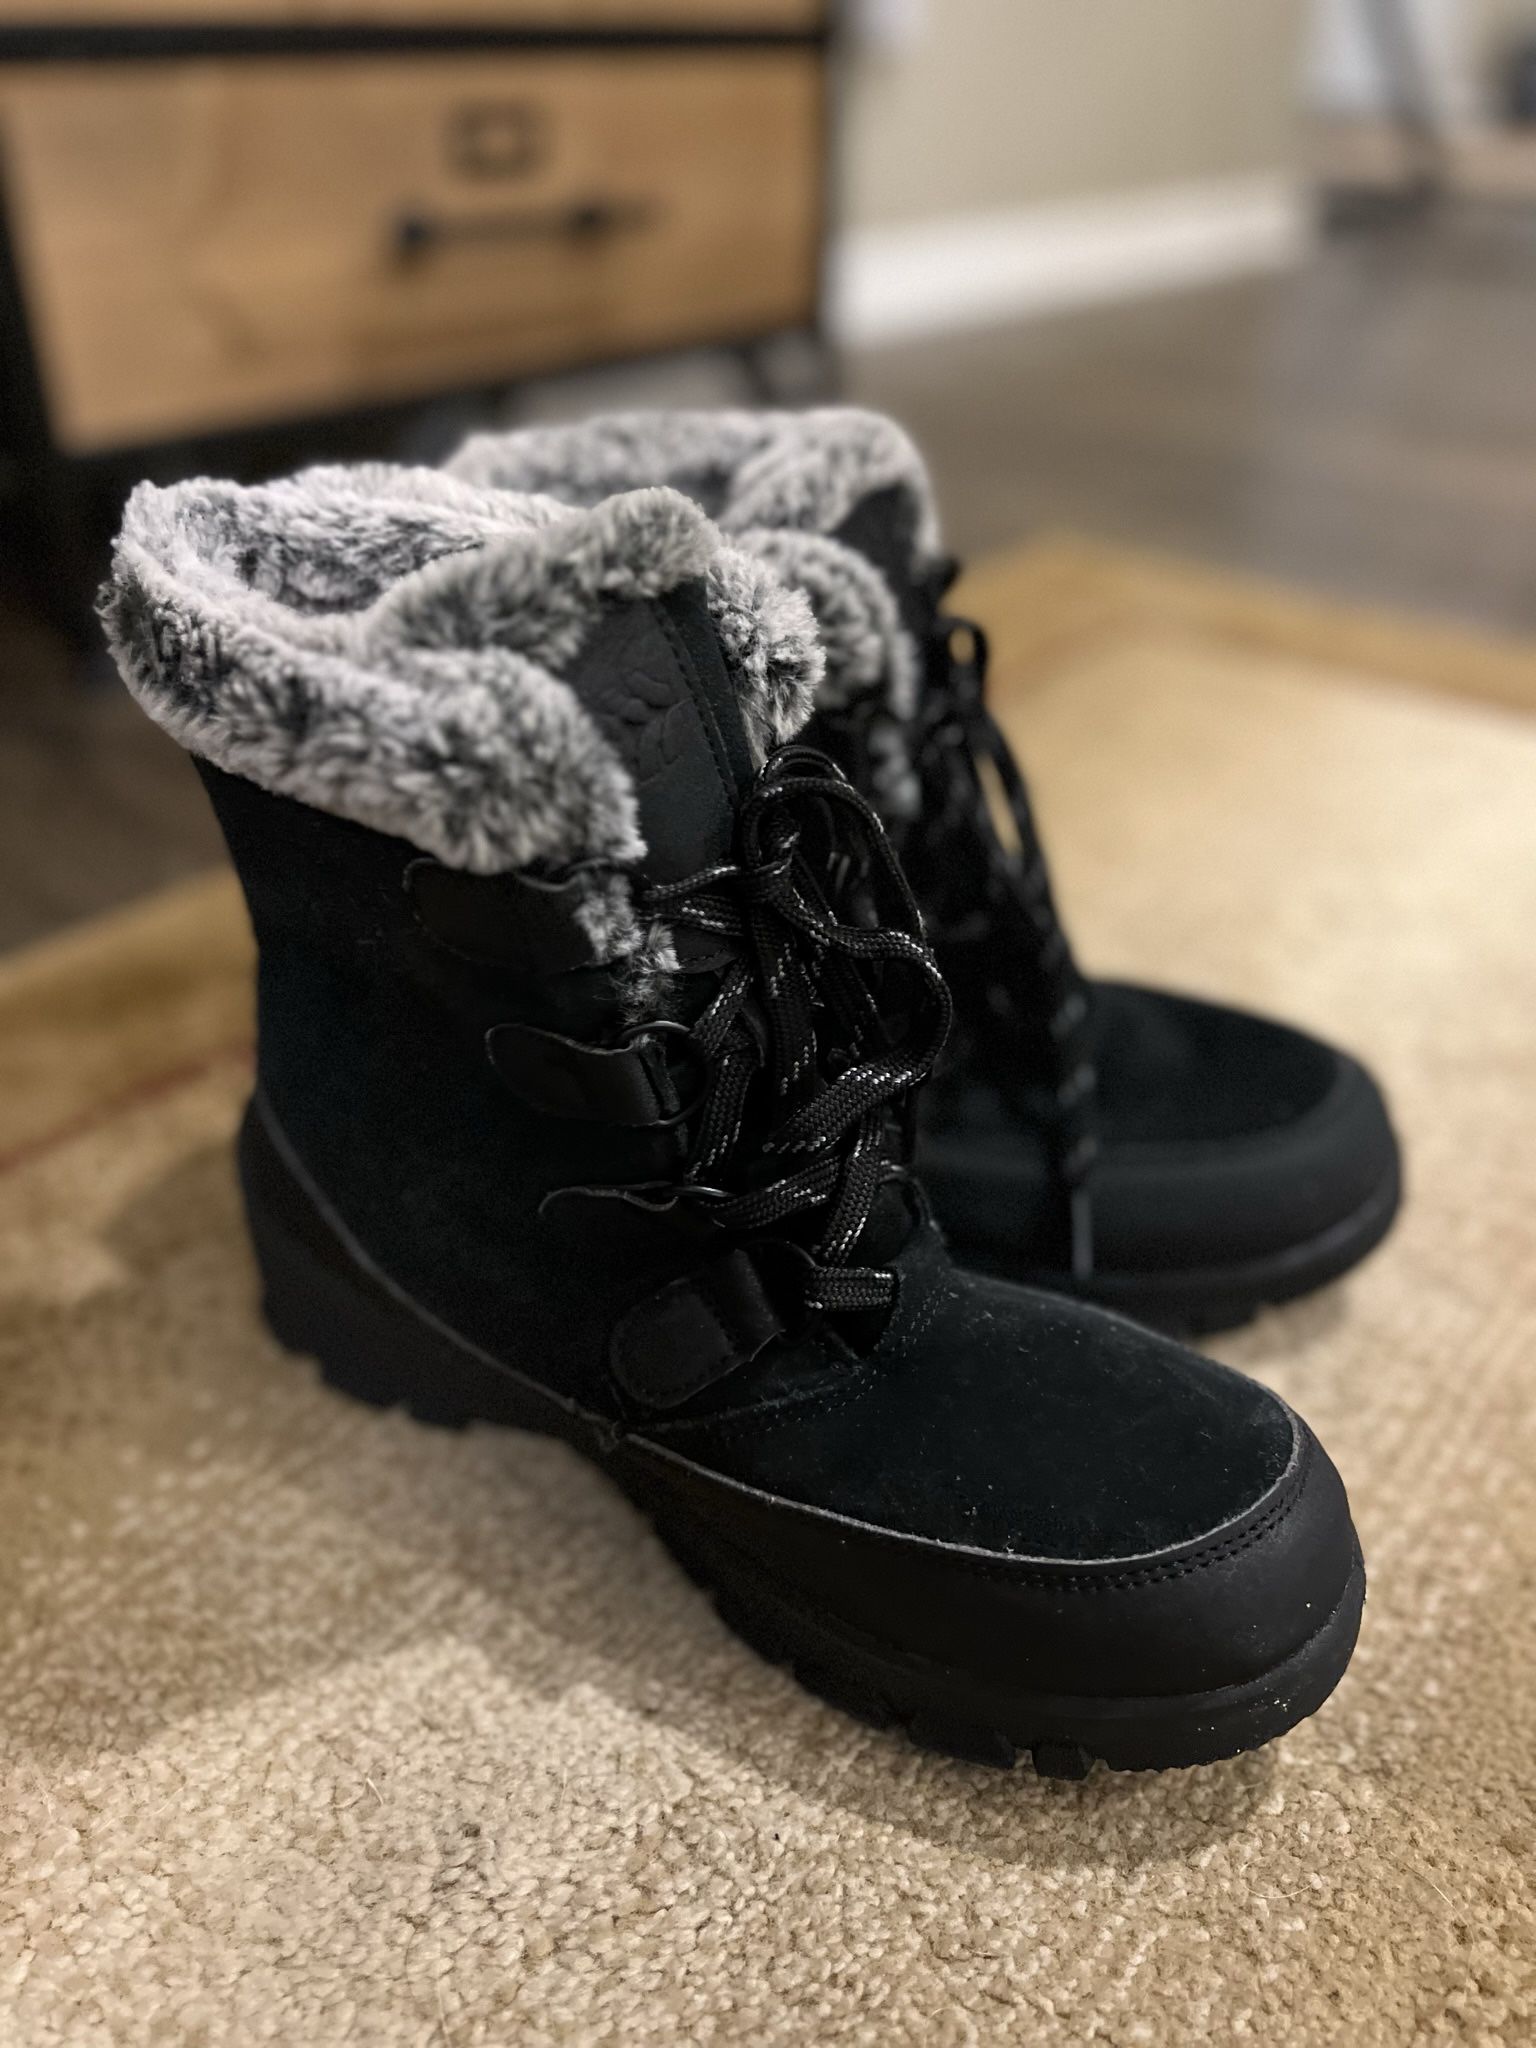 Women’s Shoe Boots Black